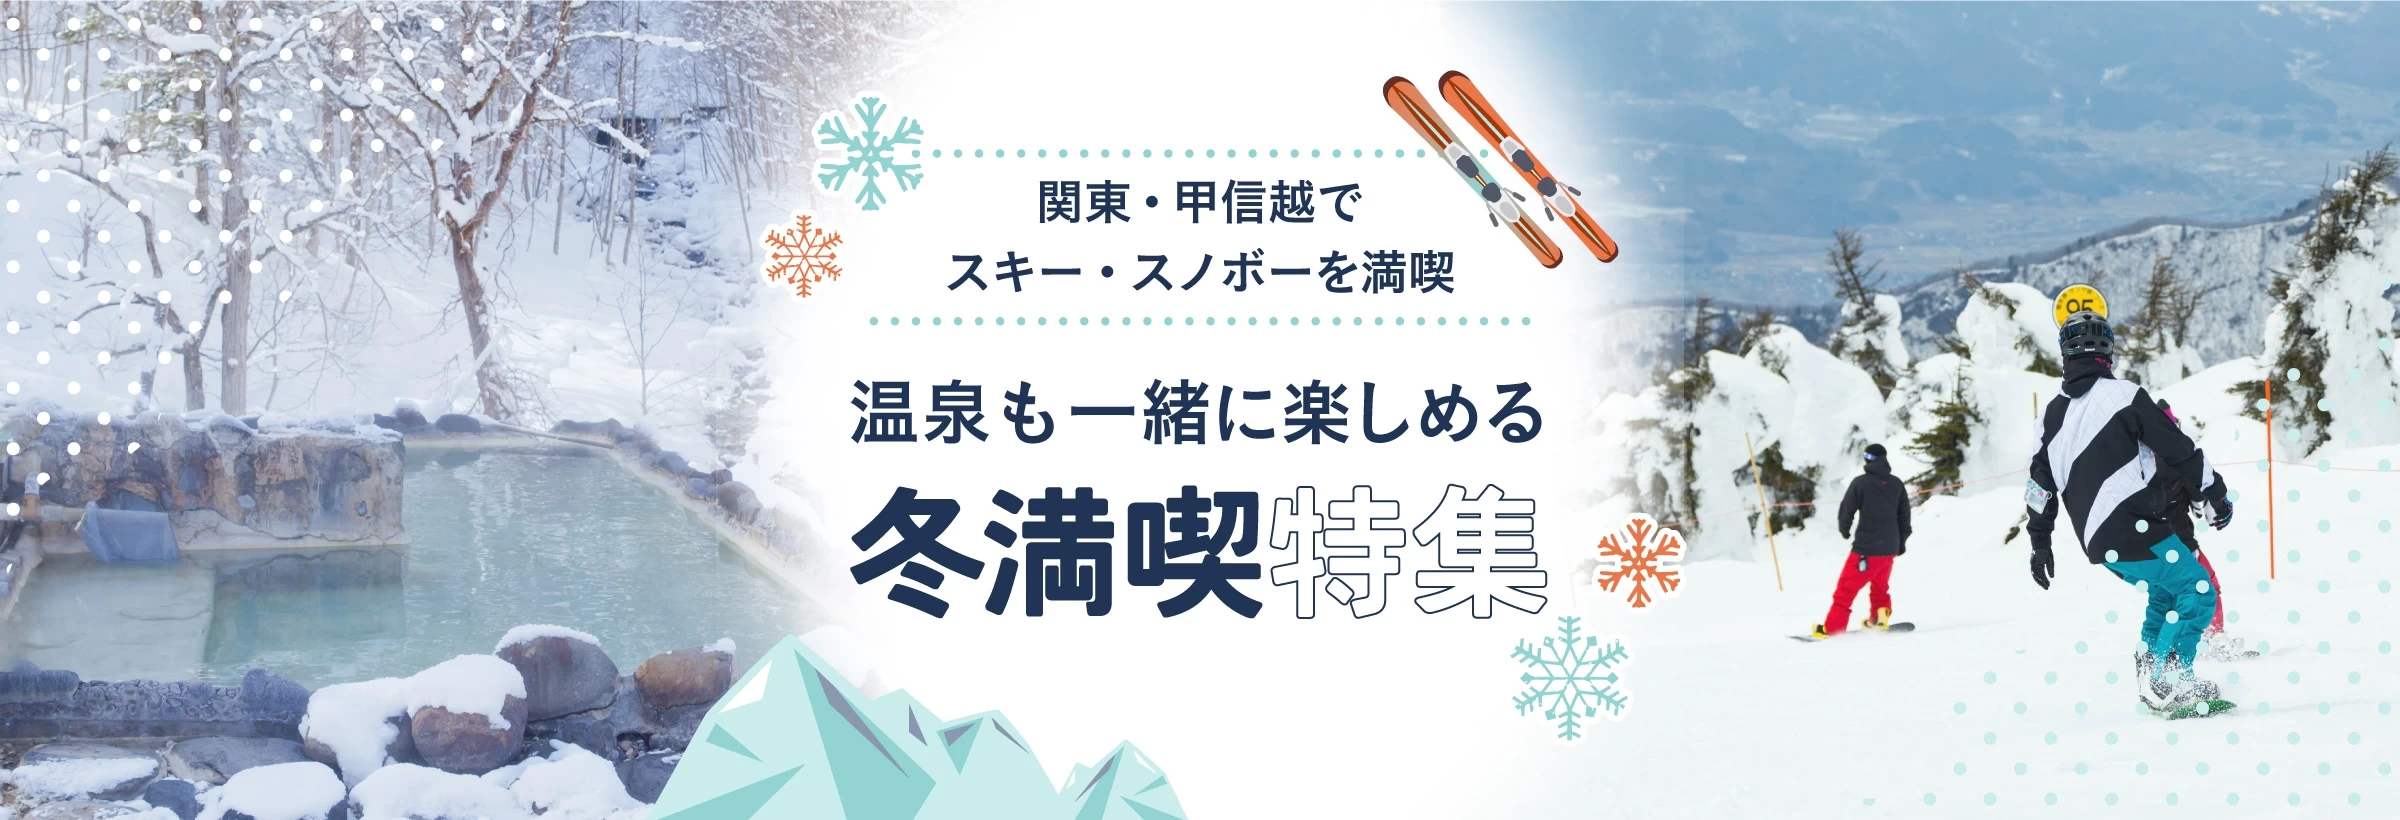 【関東・甲信越】スキー・スノボー×温泉